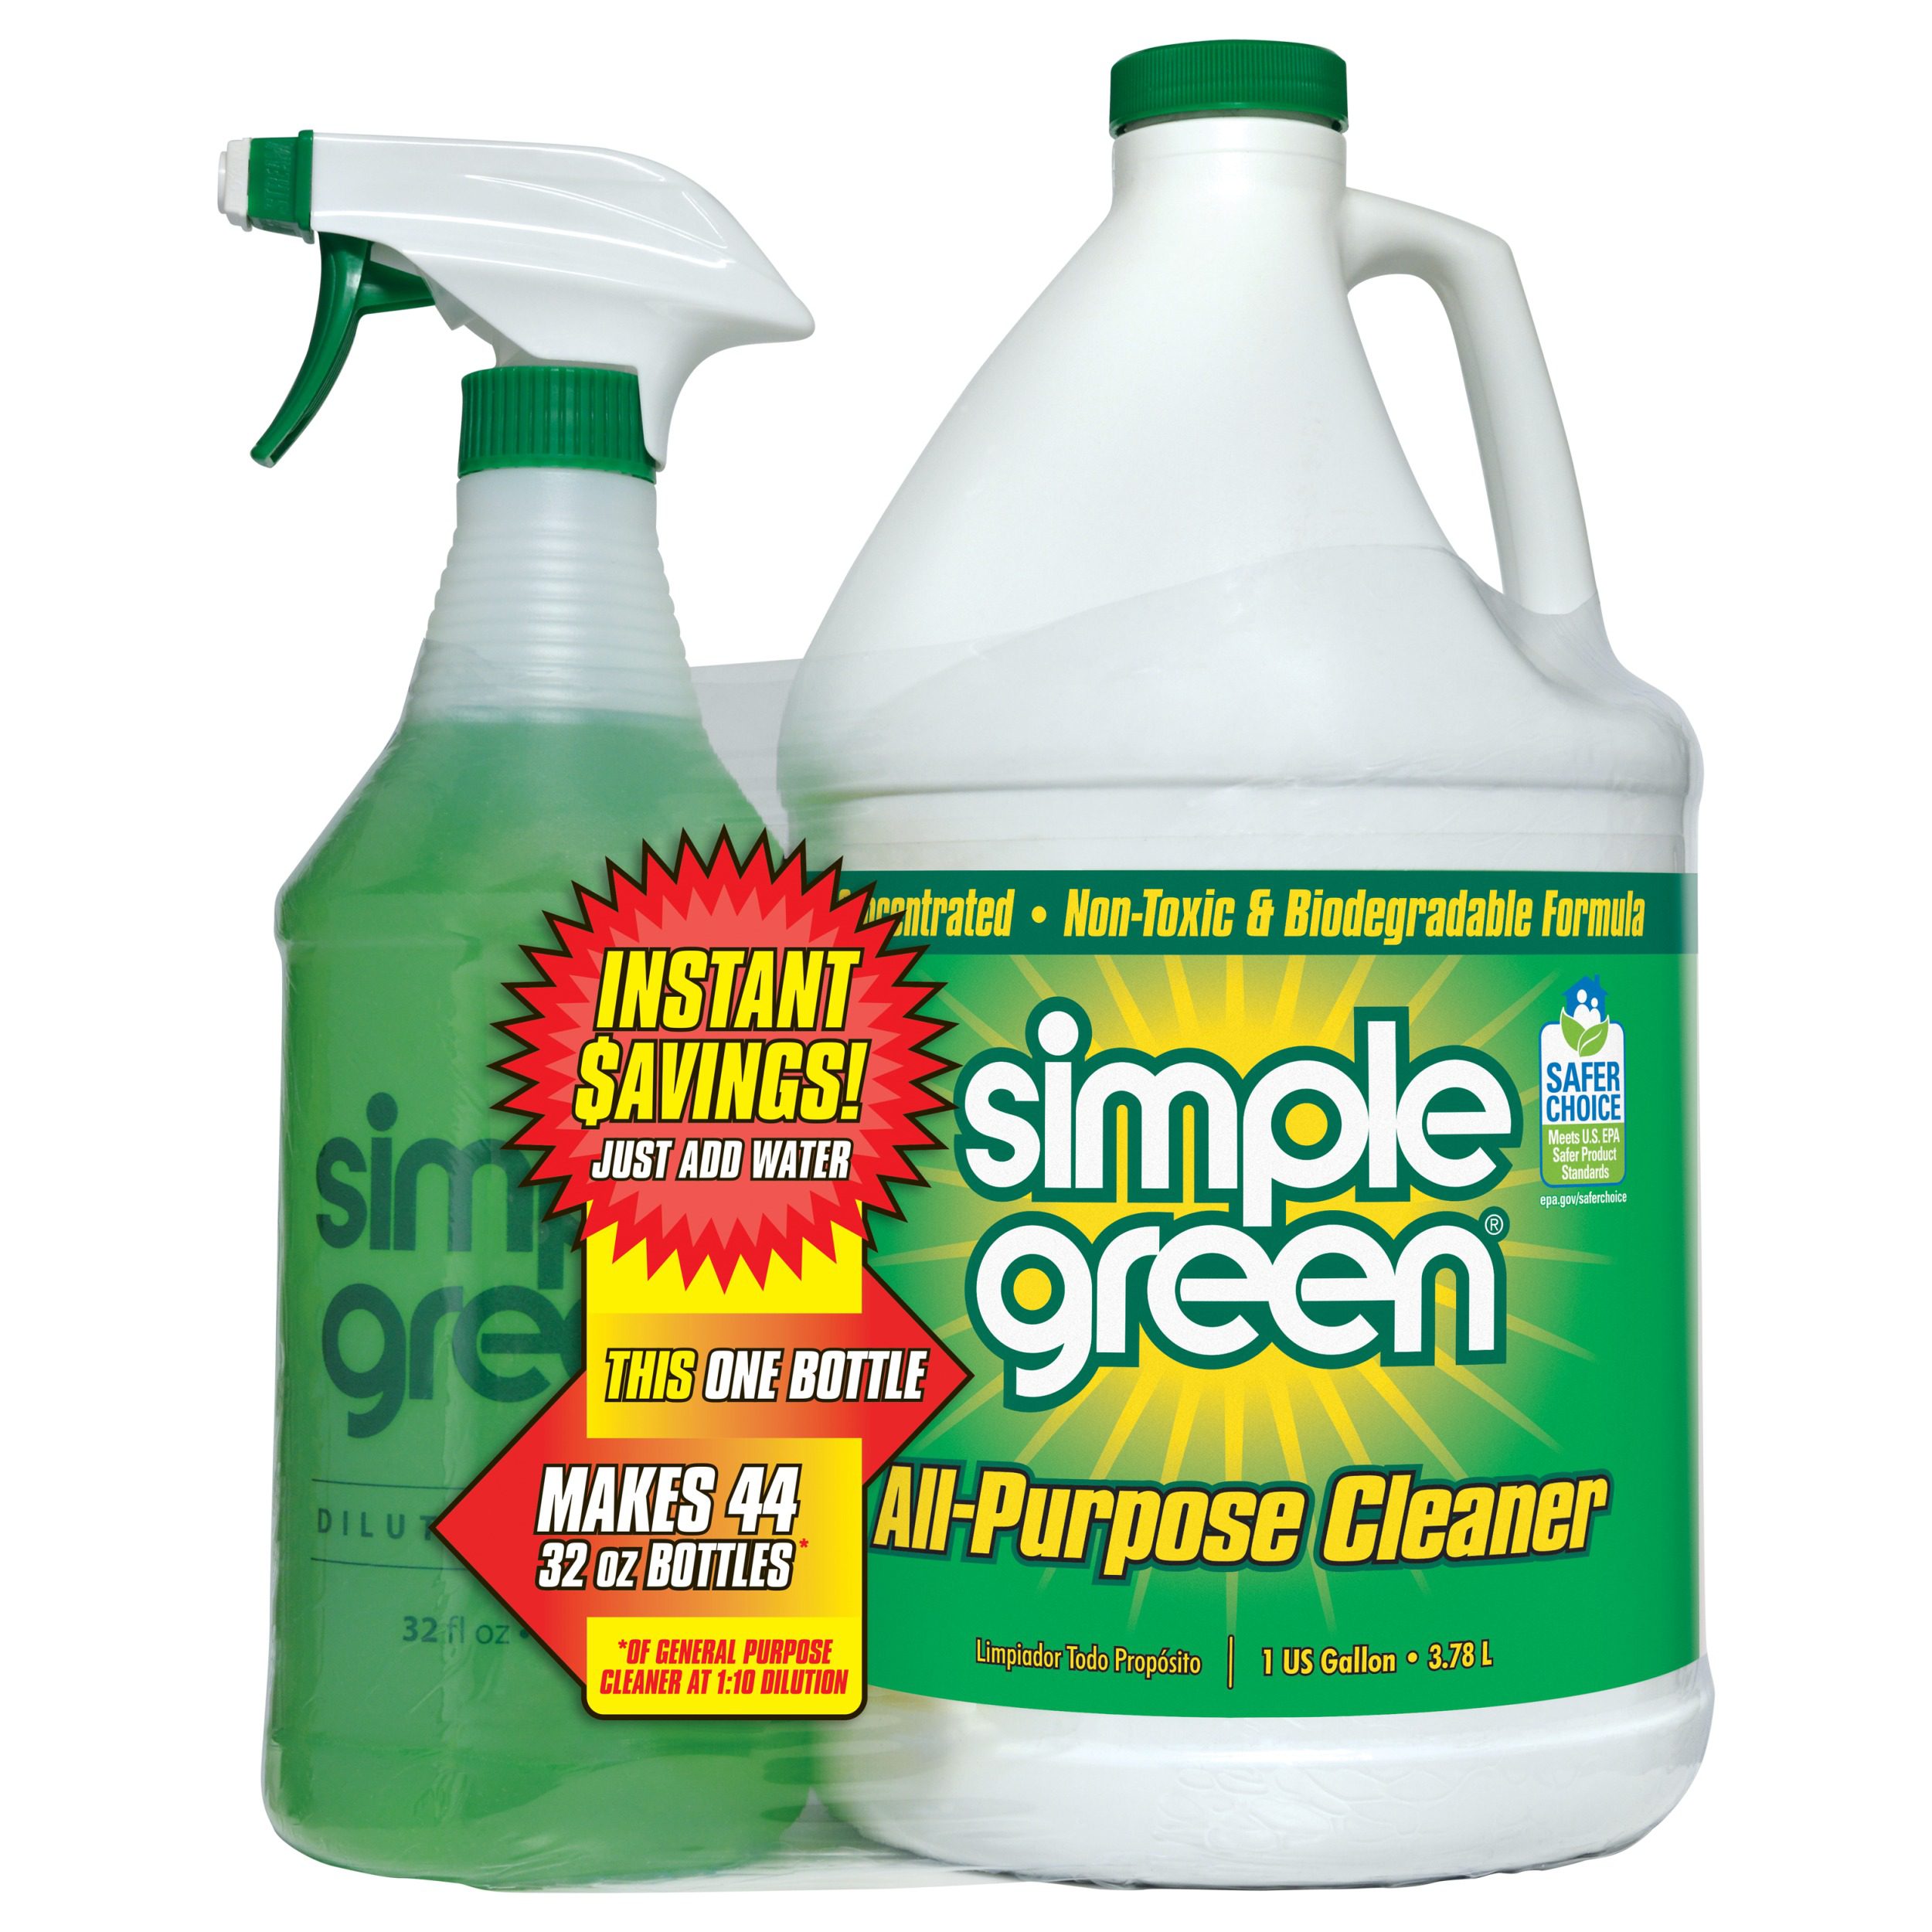 Limpia de forma suave y ecológica con los accesorios de cuidado de clean &  green